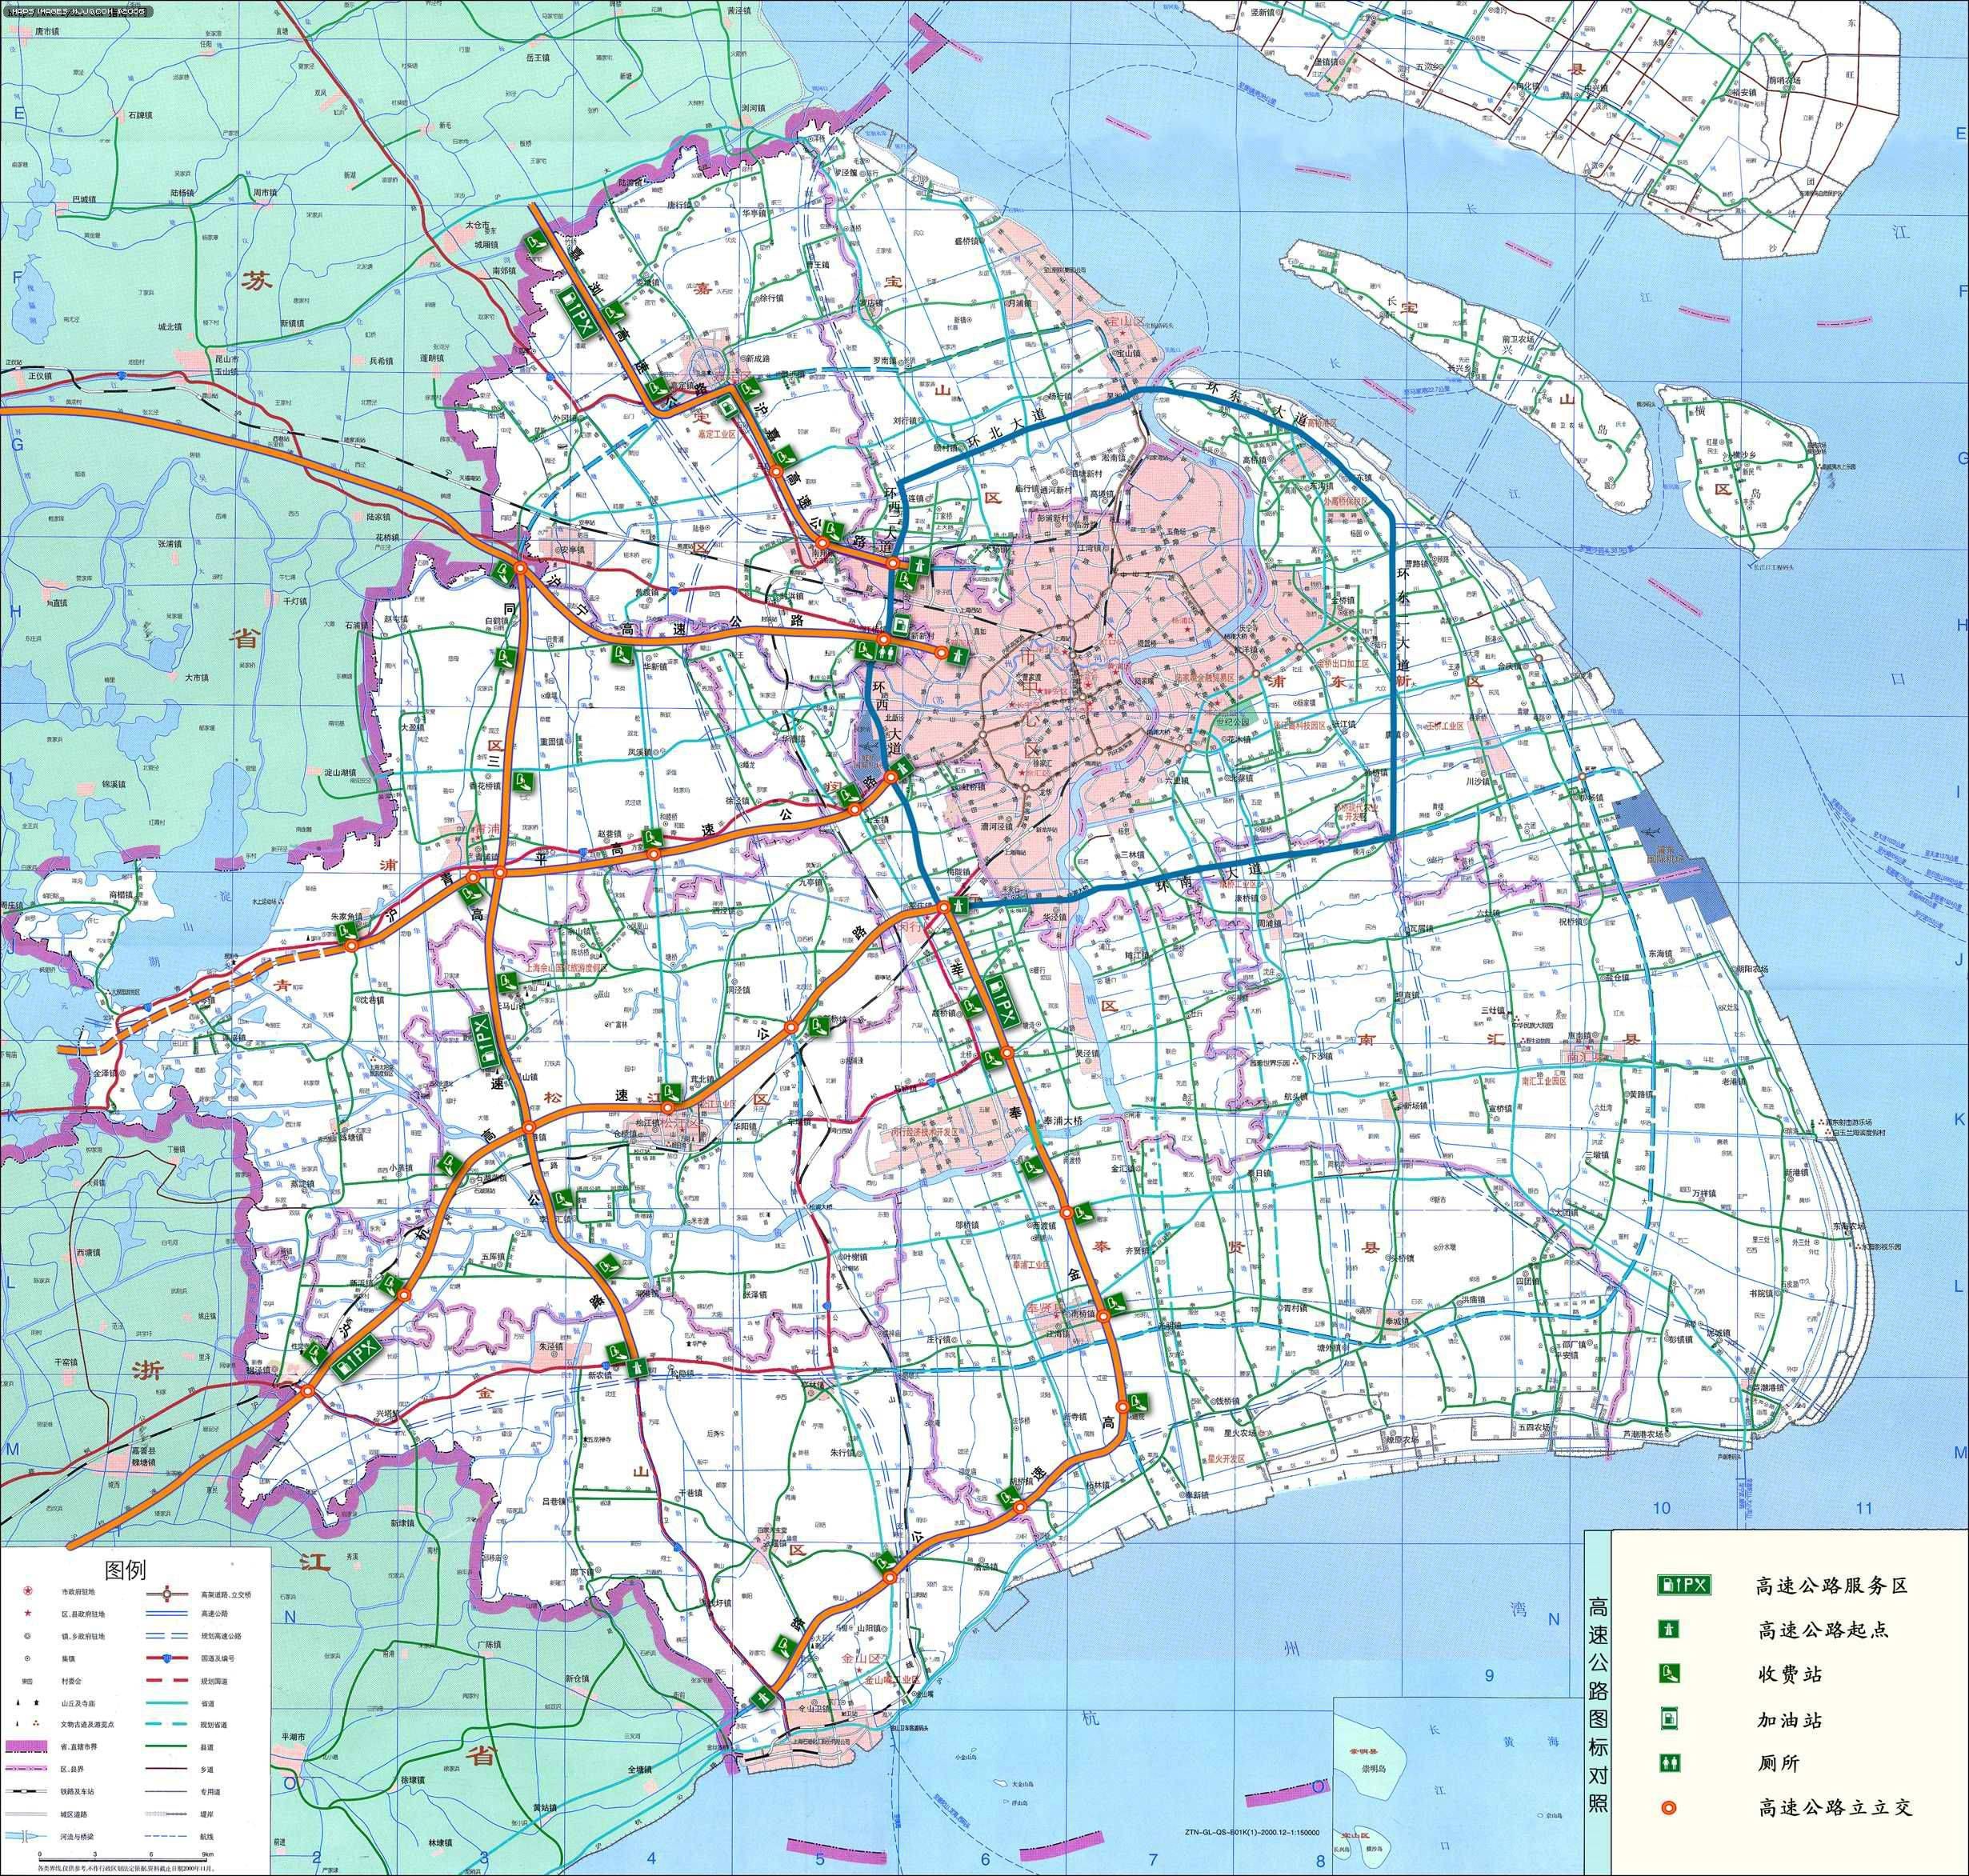 上海市区地图全图高清版_地图窝